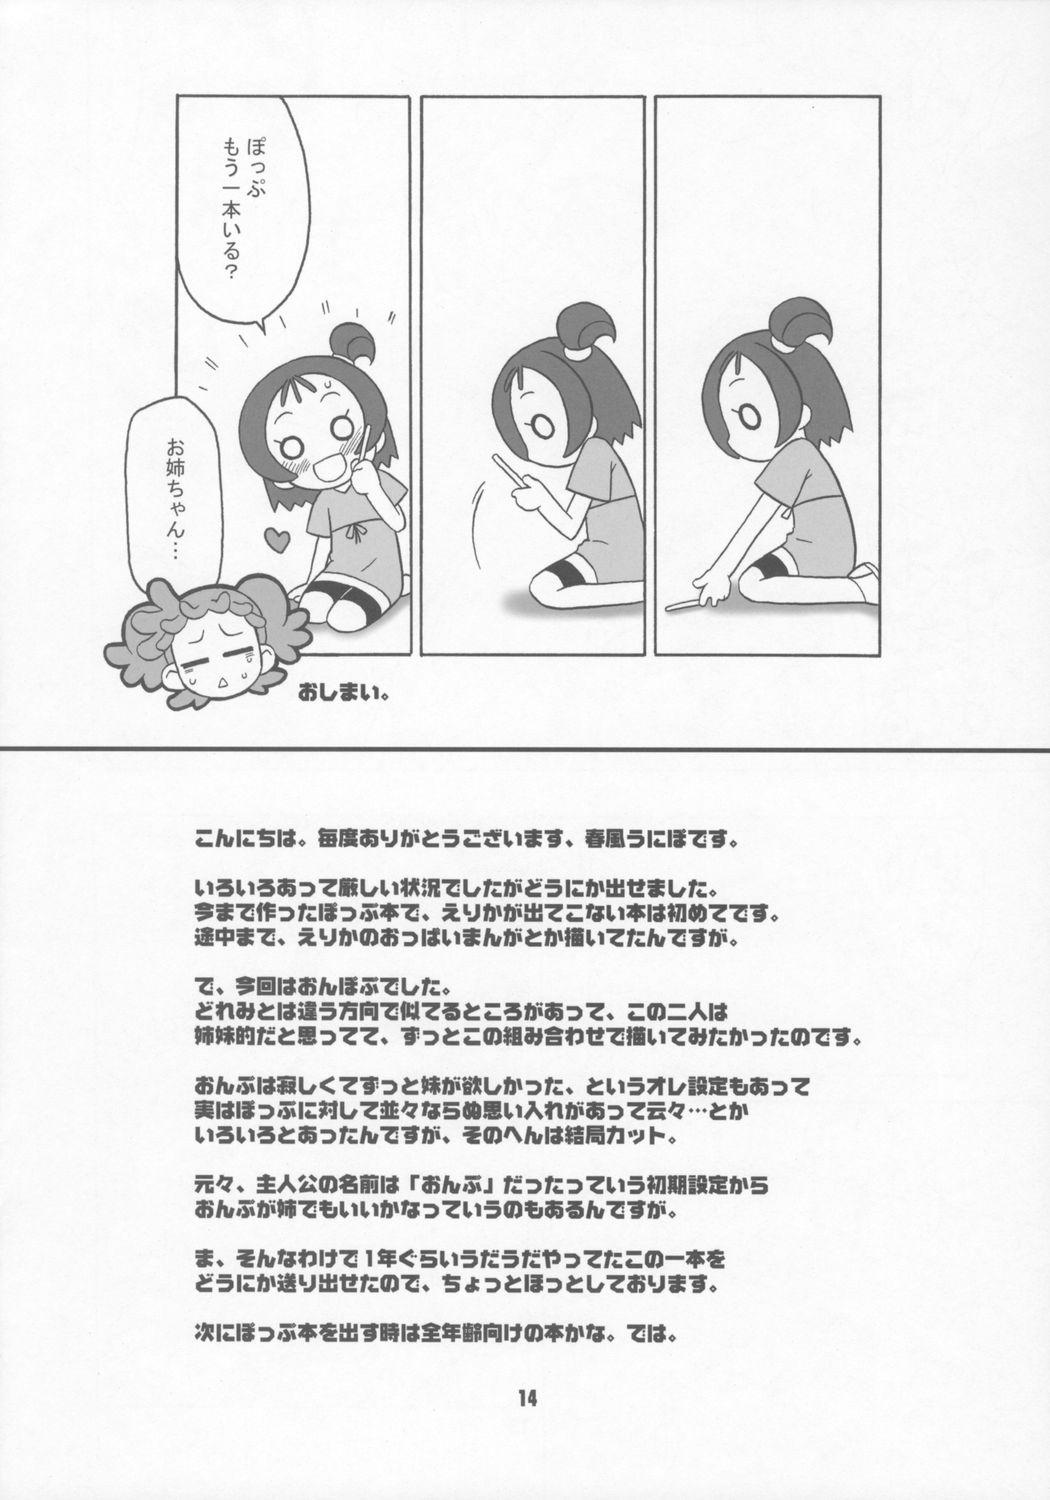 Leite Bokura wa mucha mo suru kedo. - Ojamajo doremi Rough Fuck - Page 13